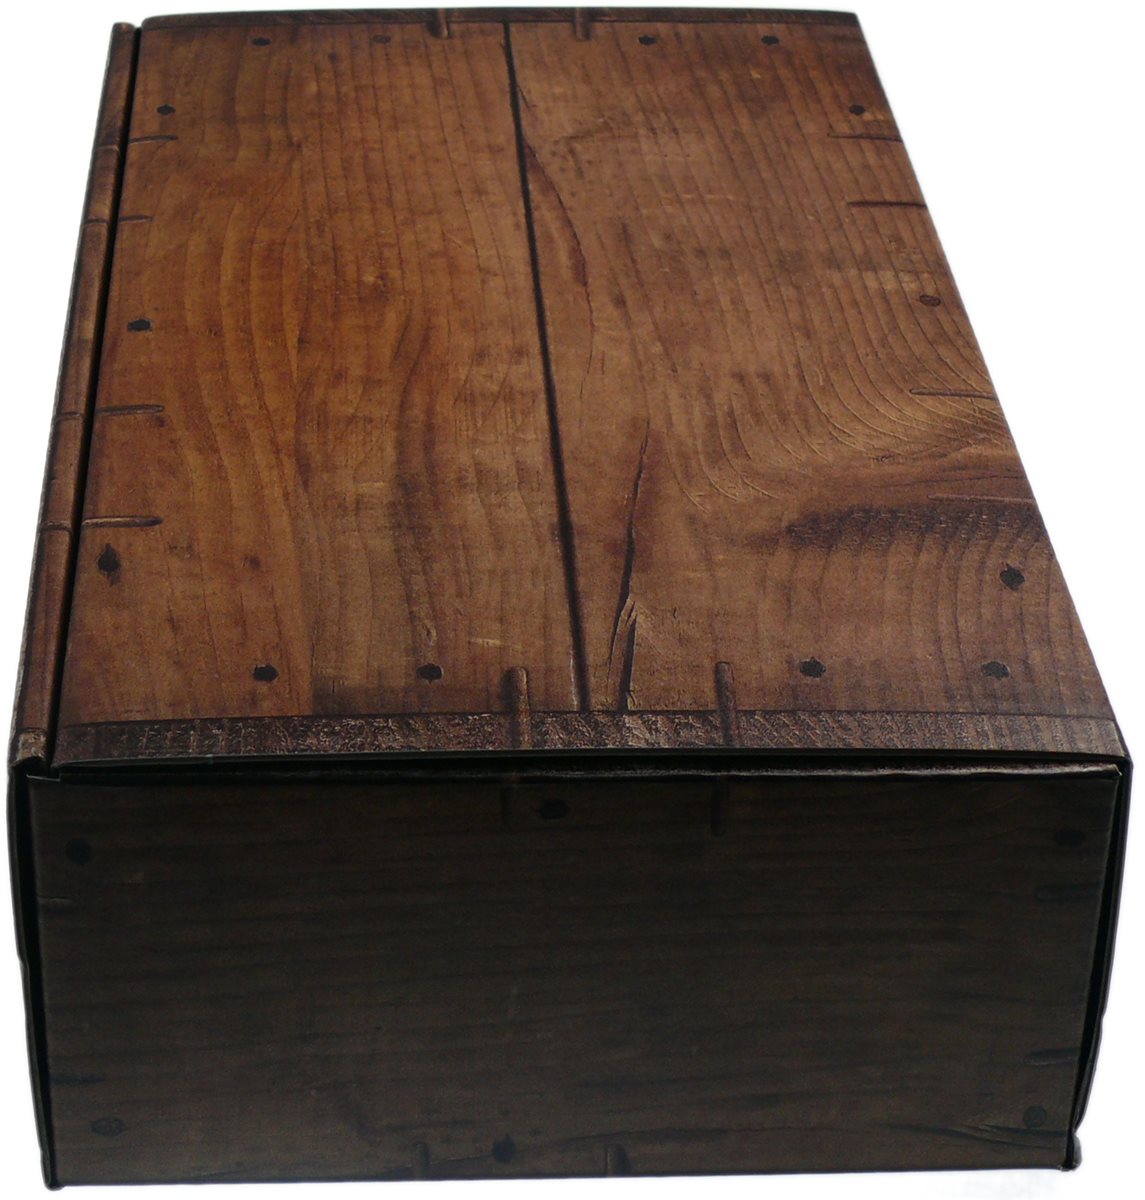 Schachtel in dunkler Holzoptik "rustikal" - WK 2er - Weinkoffer Weinkarton Box Truhe Verpackung Geschenke
